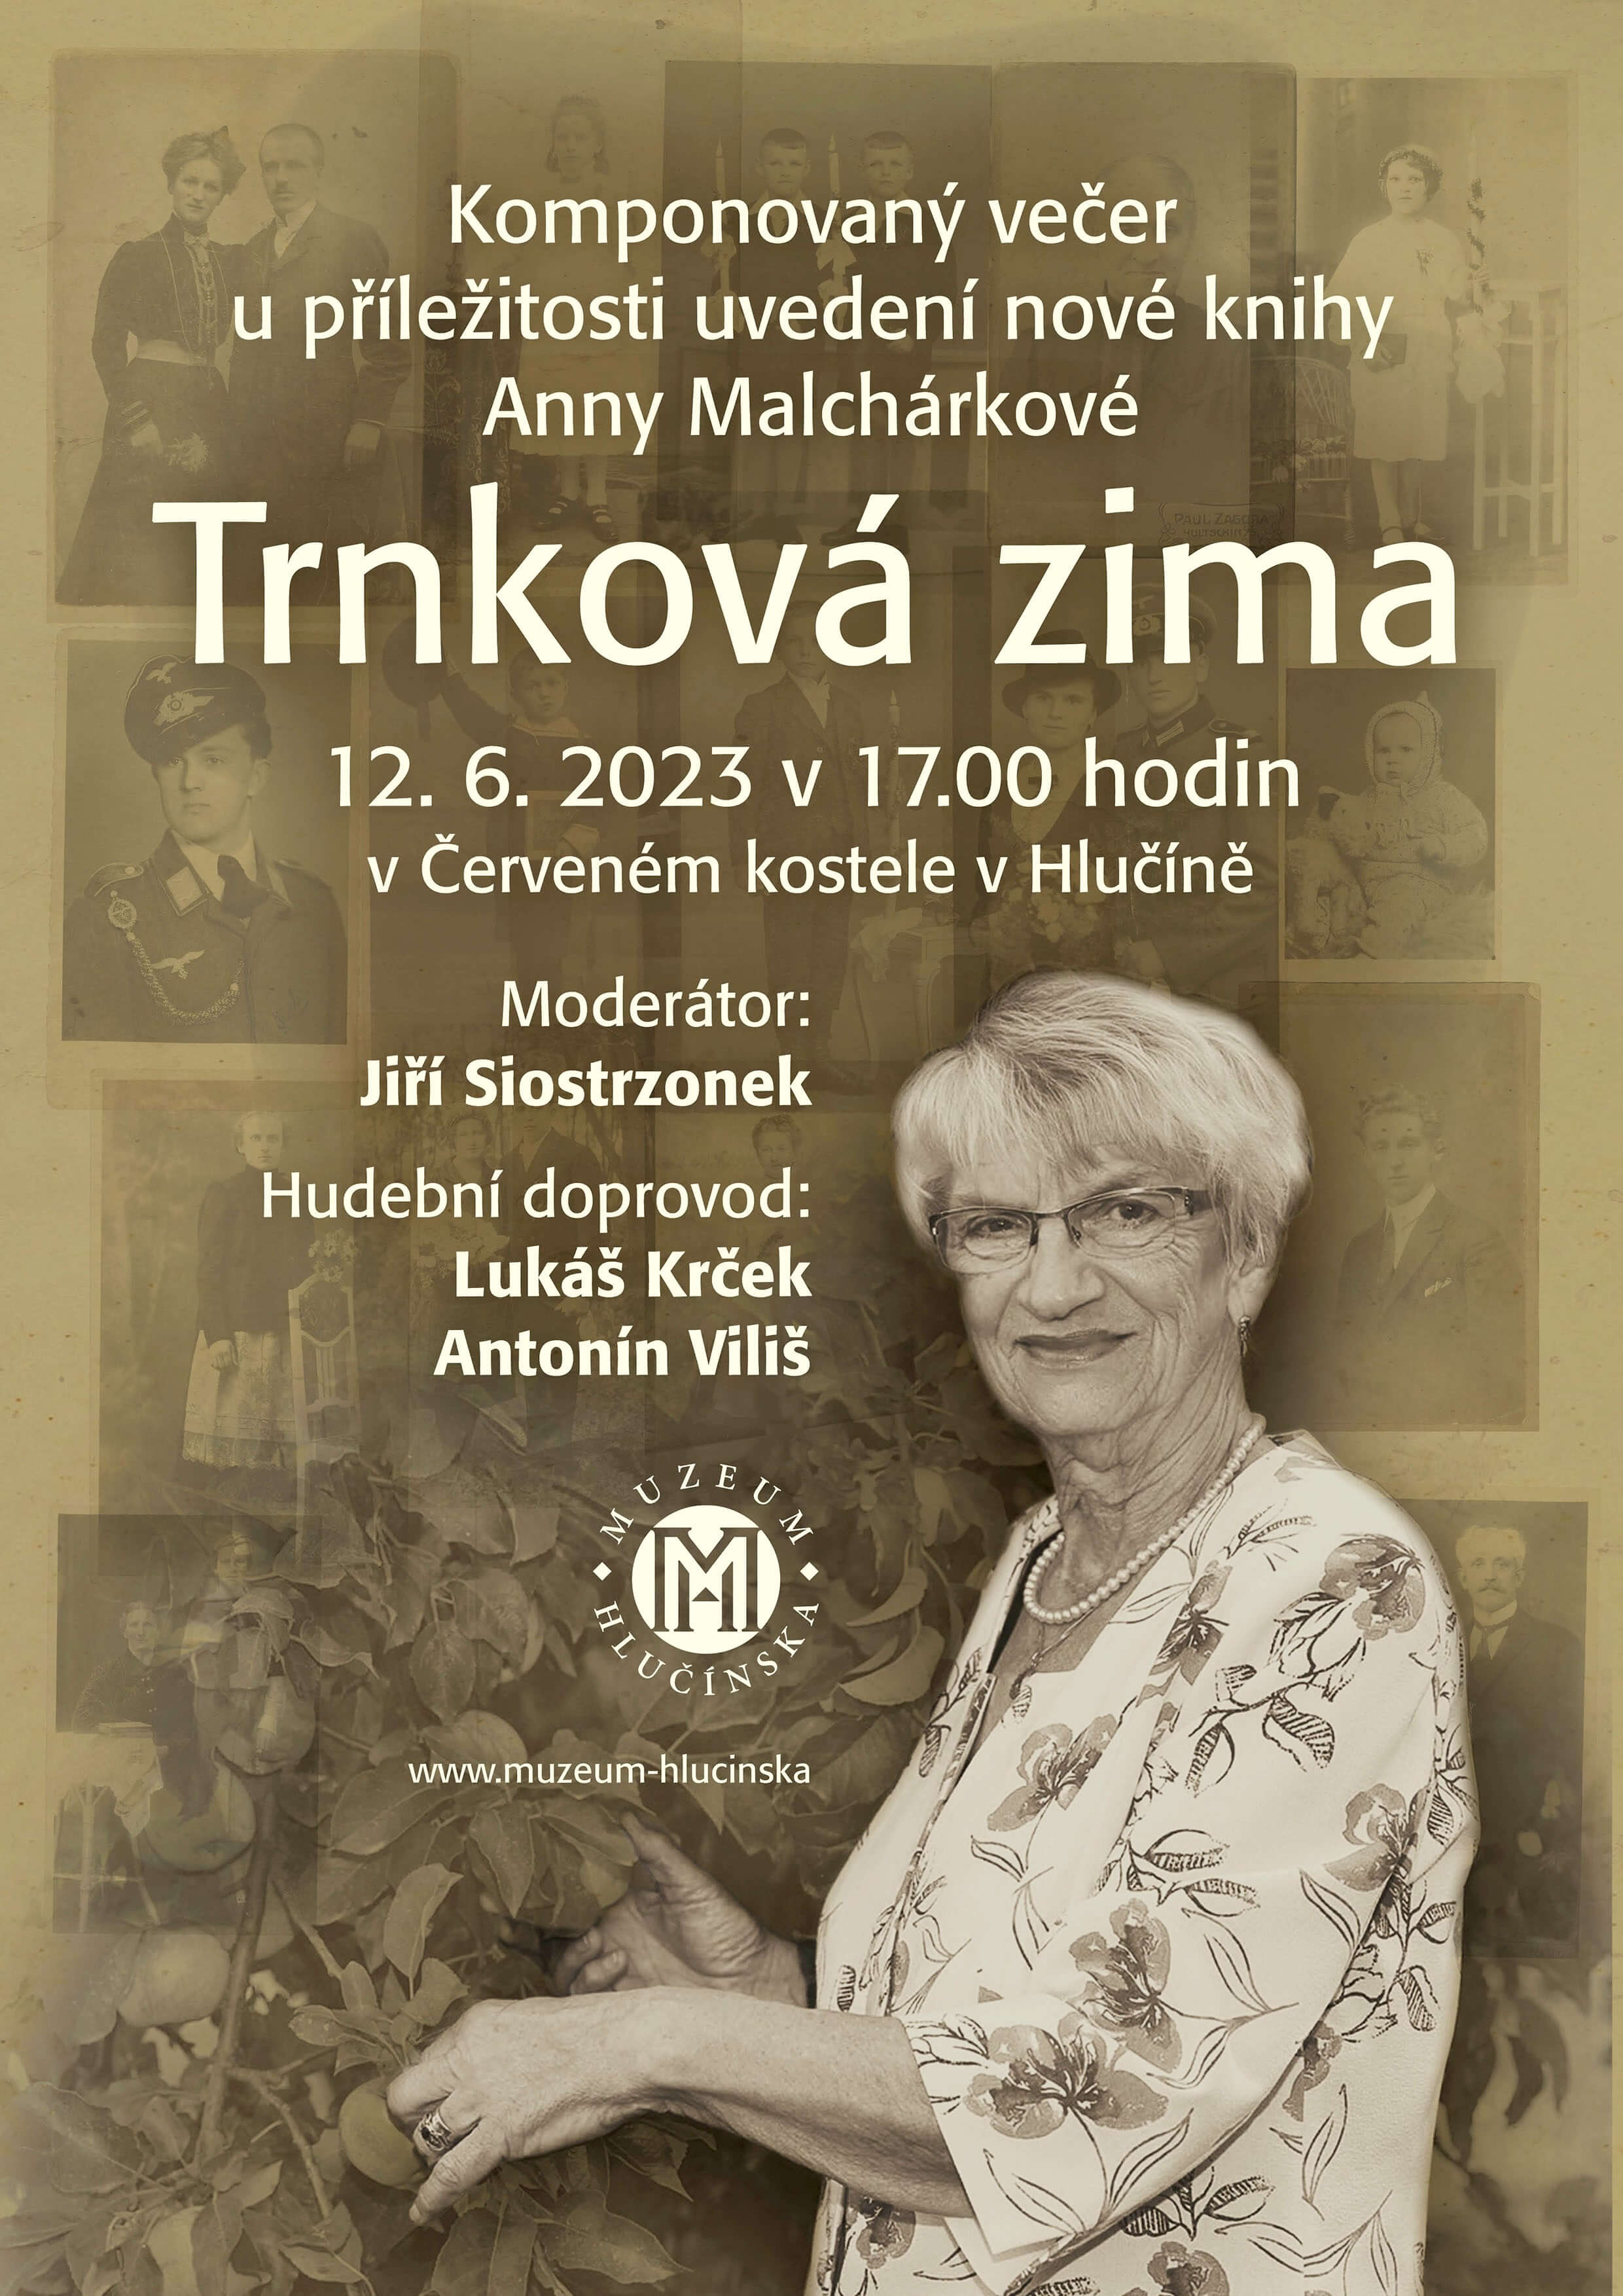 Komponovaný večer u příležitosti uvedení nové knihy Anny Malchárkové 